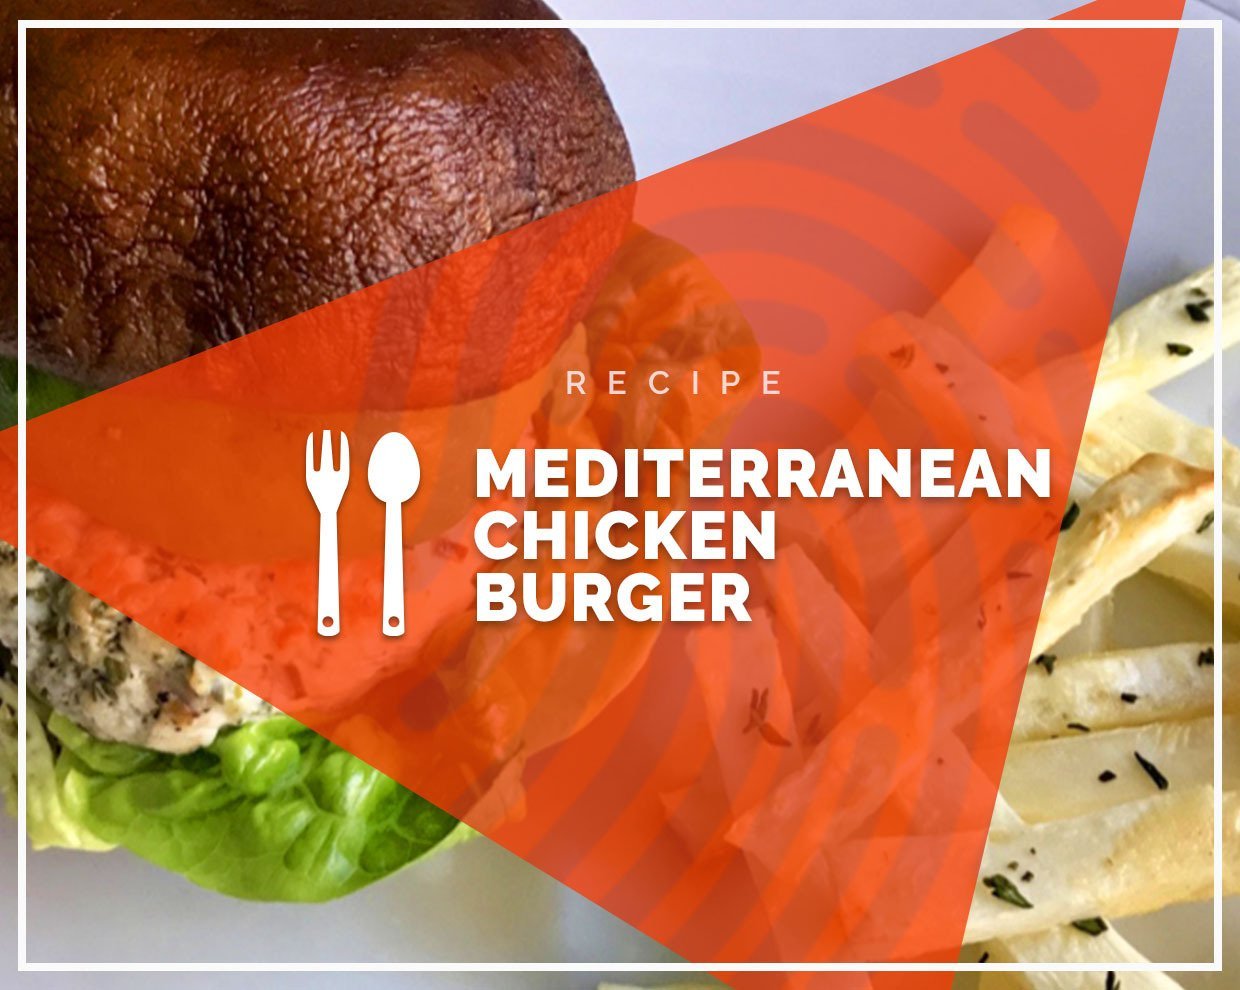 Mediterranean chicken burger